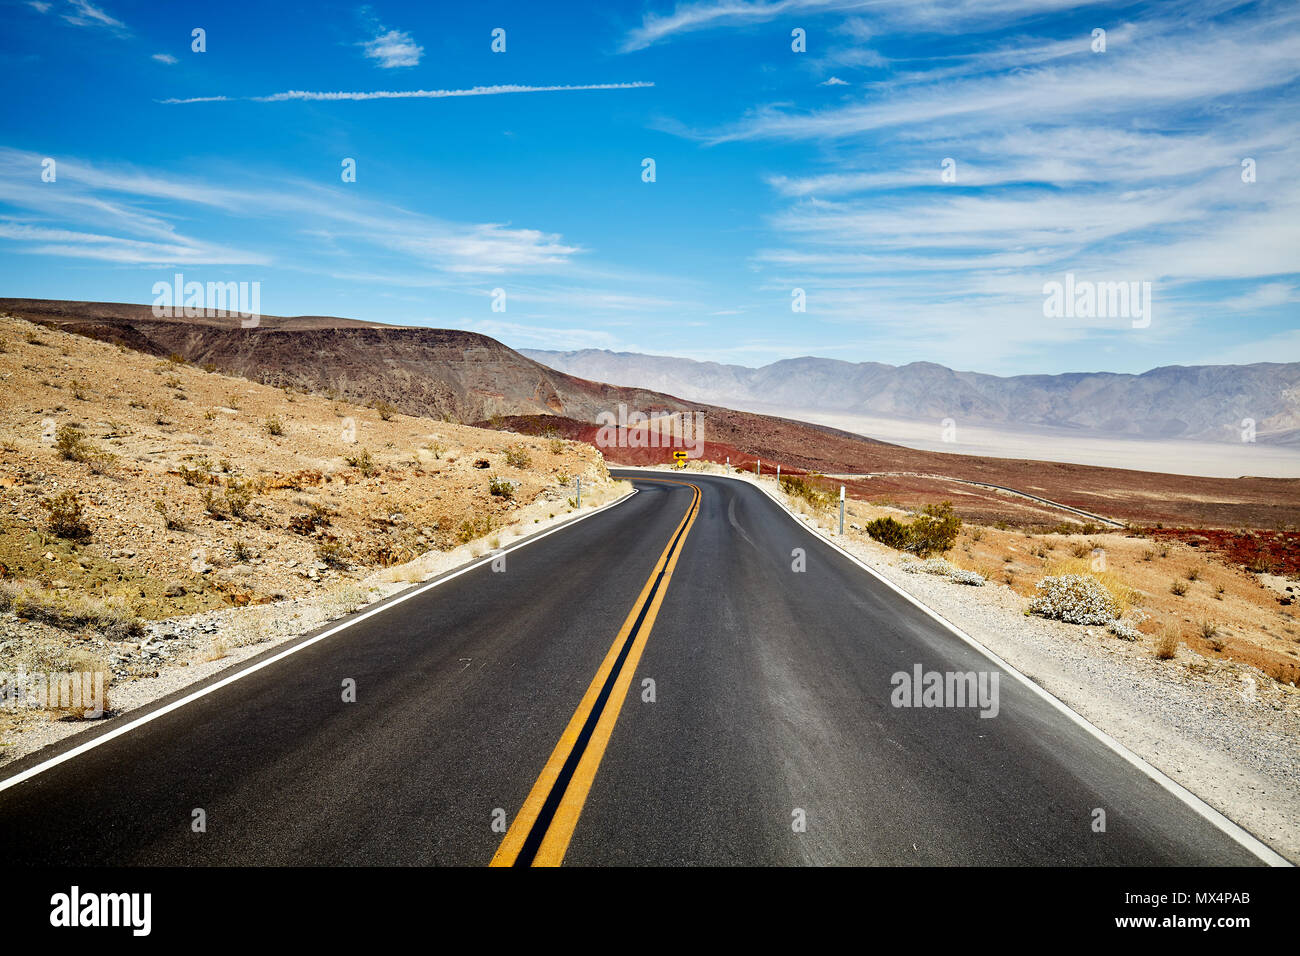 Immagine di una strada nel deserto, il concetto di viaggio. Foto Stock